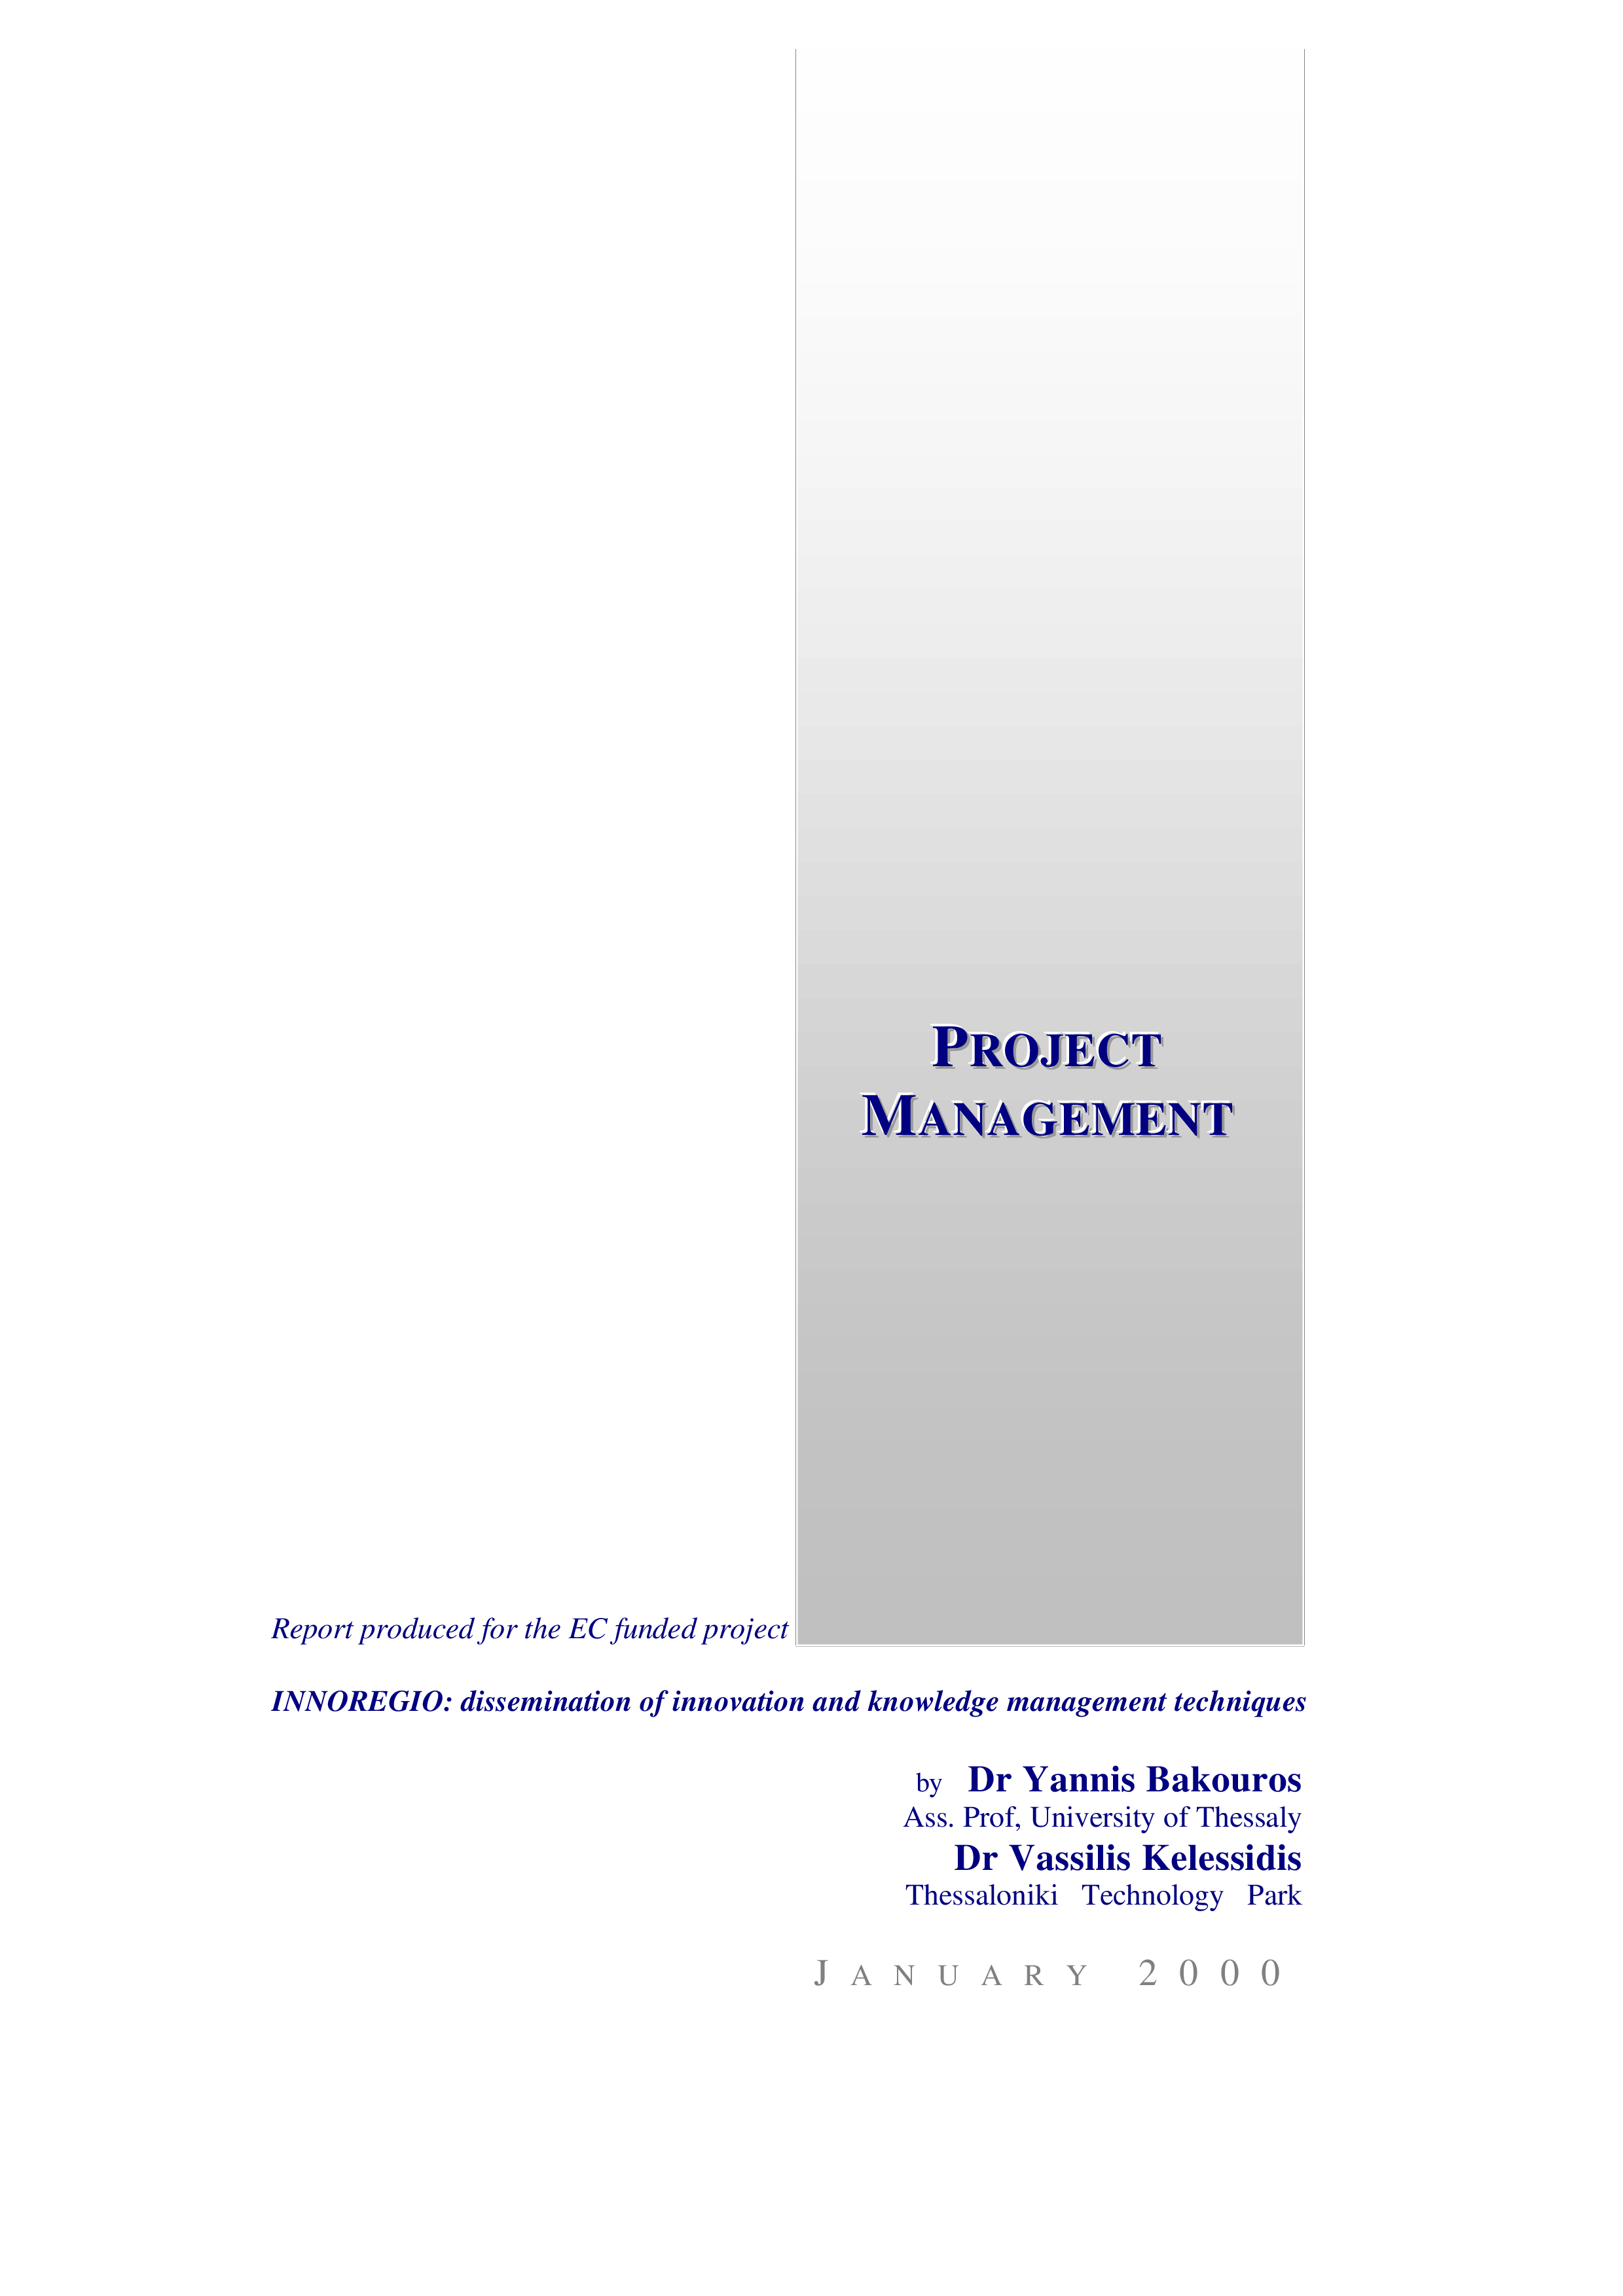 project management activity schedule plantilla imagen principal